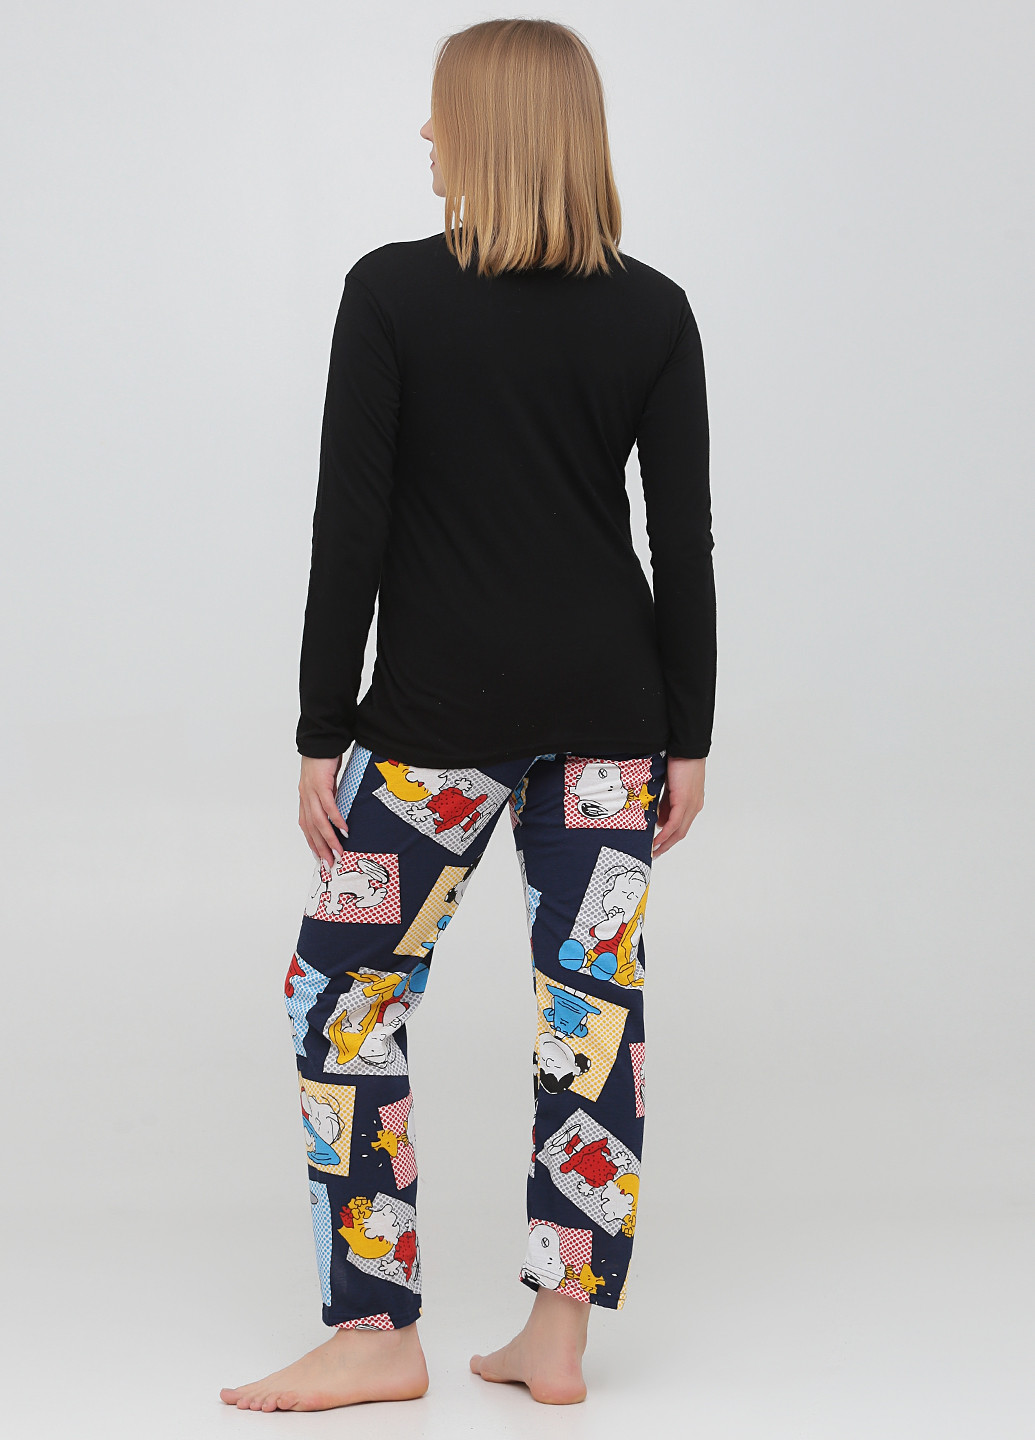 Черная всесезон пижама (лонгслив, брюки) лонгслив + брюки Carla Mara